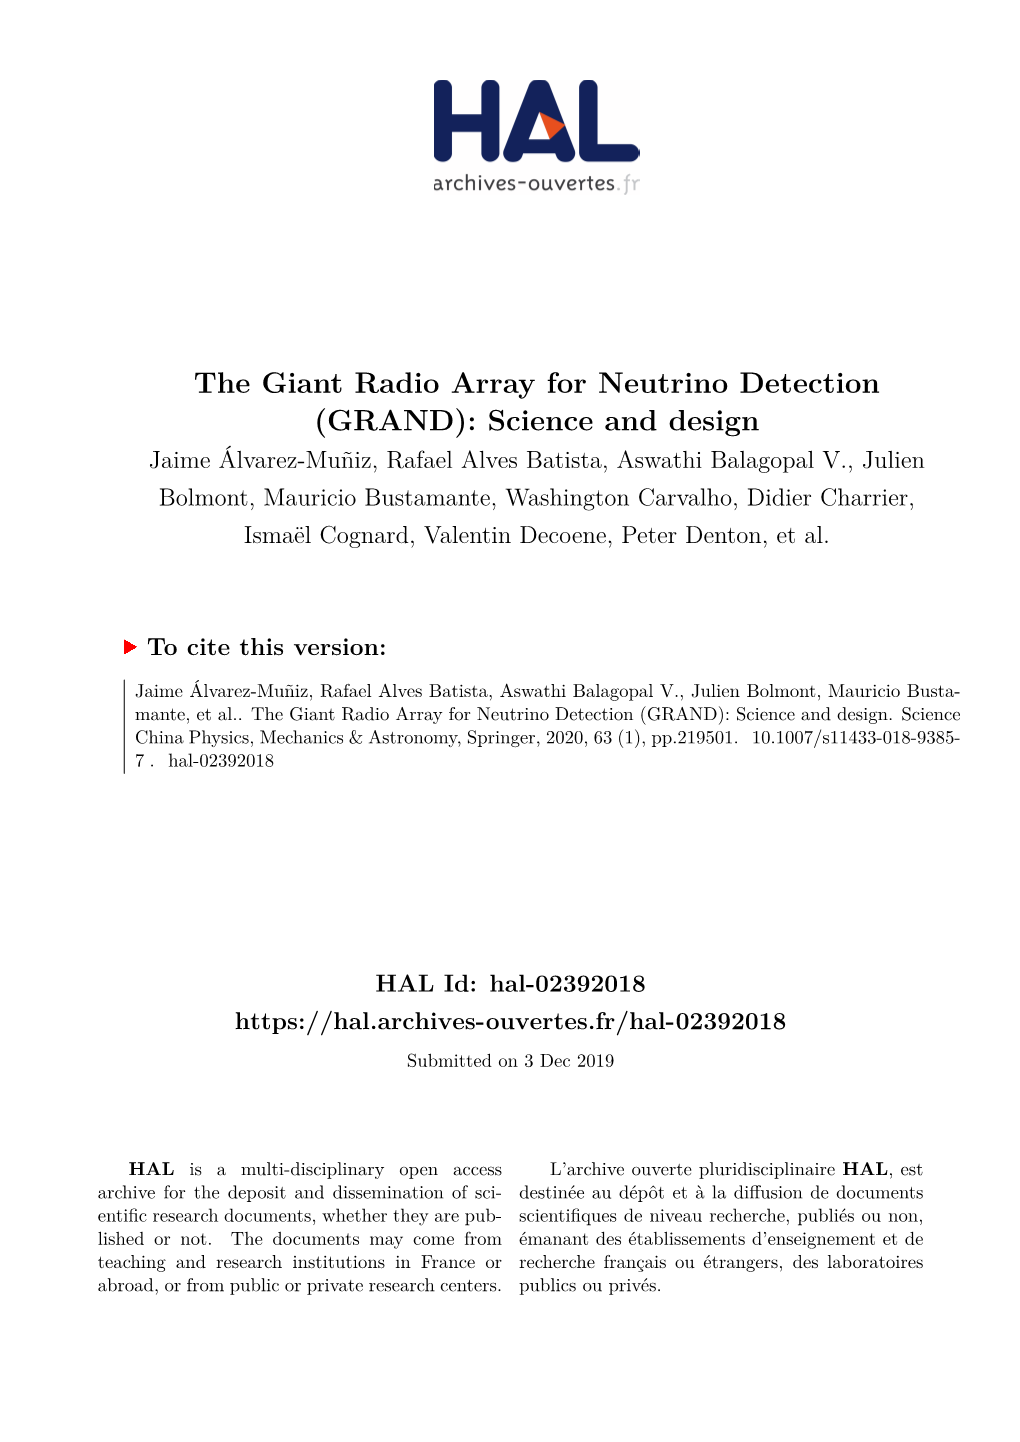 The Giant Radio Array for Neutrino Detection